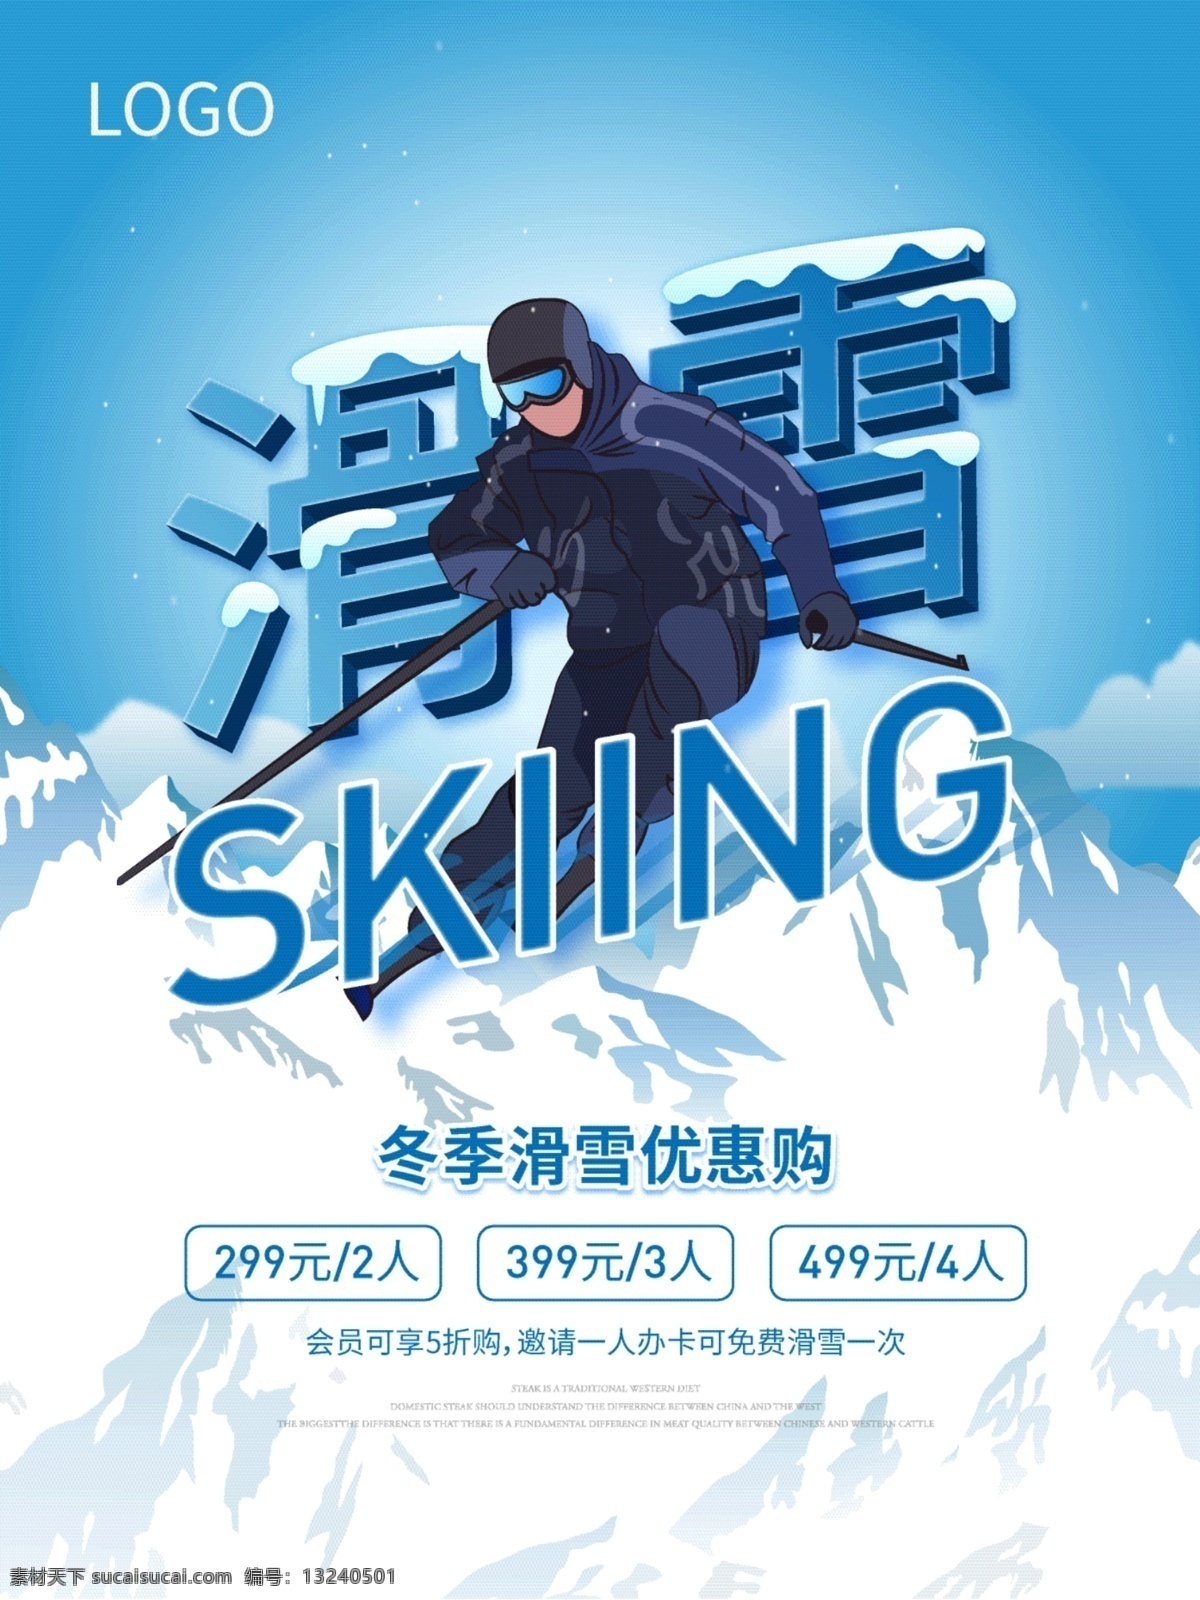 原创 插画 冬季 滑雪 海报 原创插画 冬季滑雪 滑雪运动 skiing 会员 优惠 滑雪场 冬季旅游 雪山 户外运动 亲子游 全家游 折扣 雪橇 户外装备